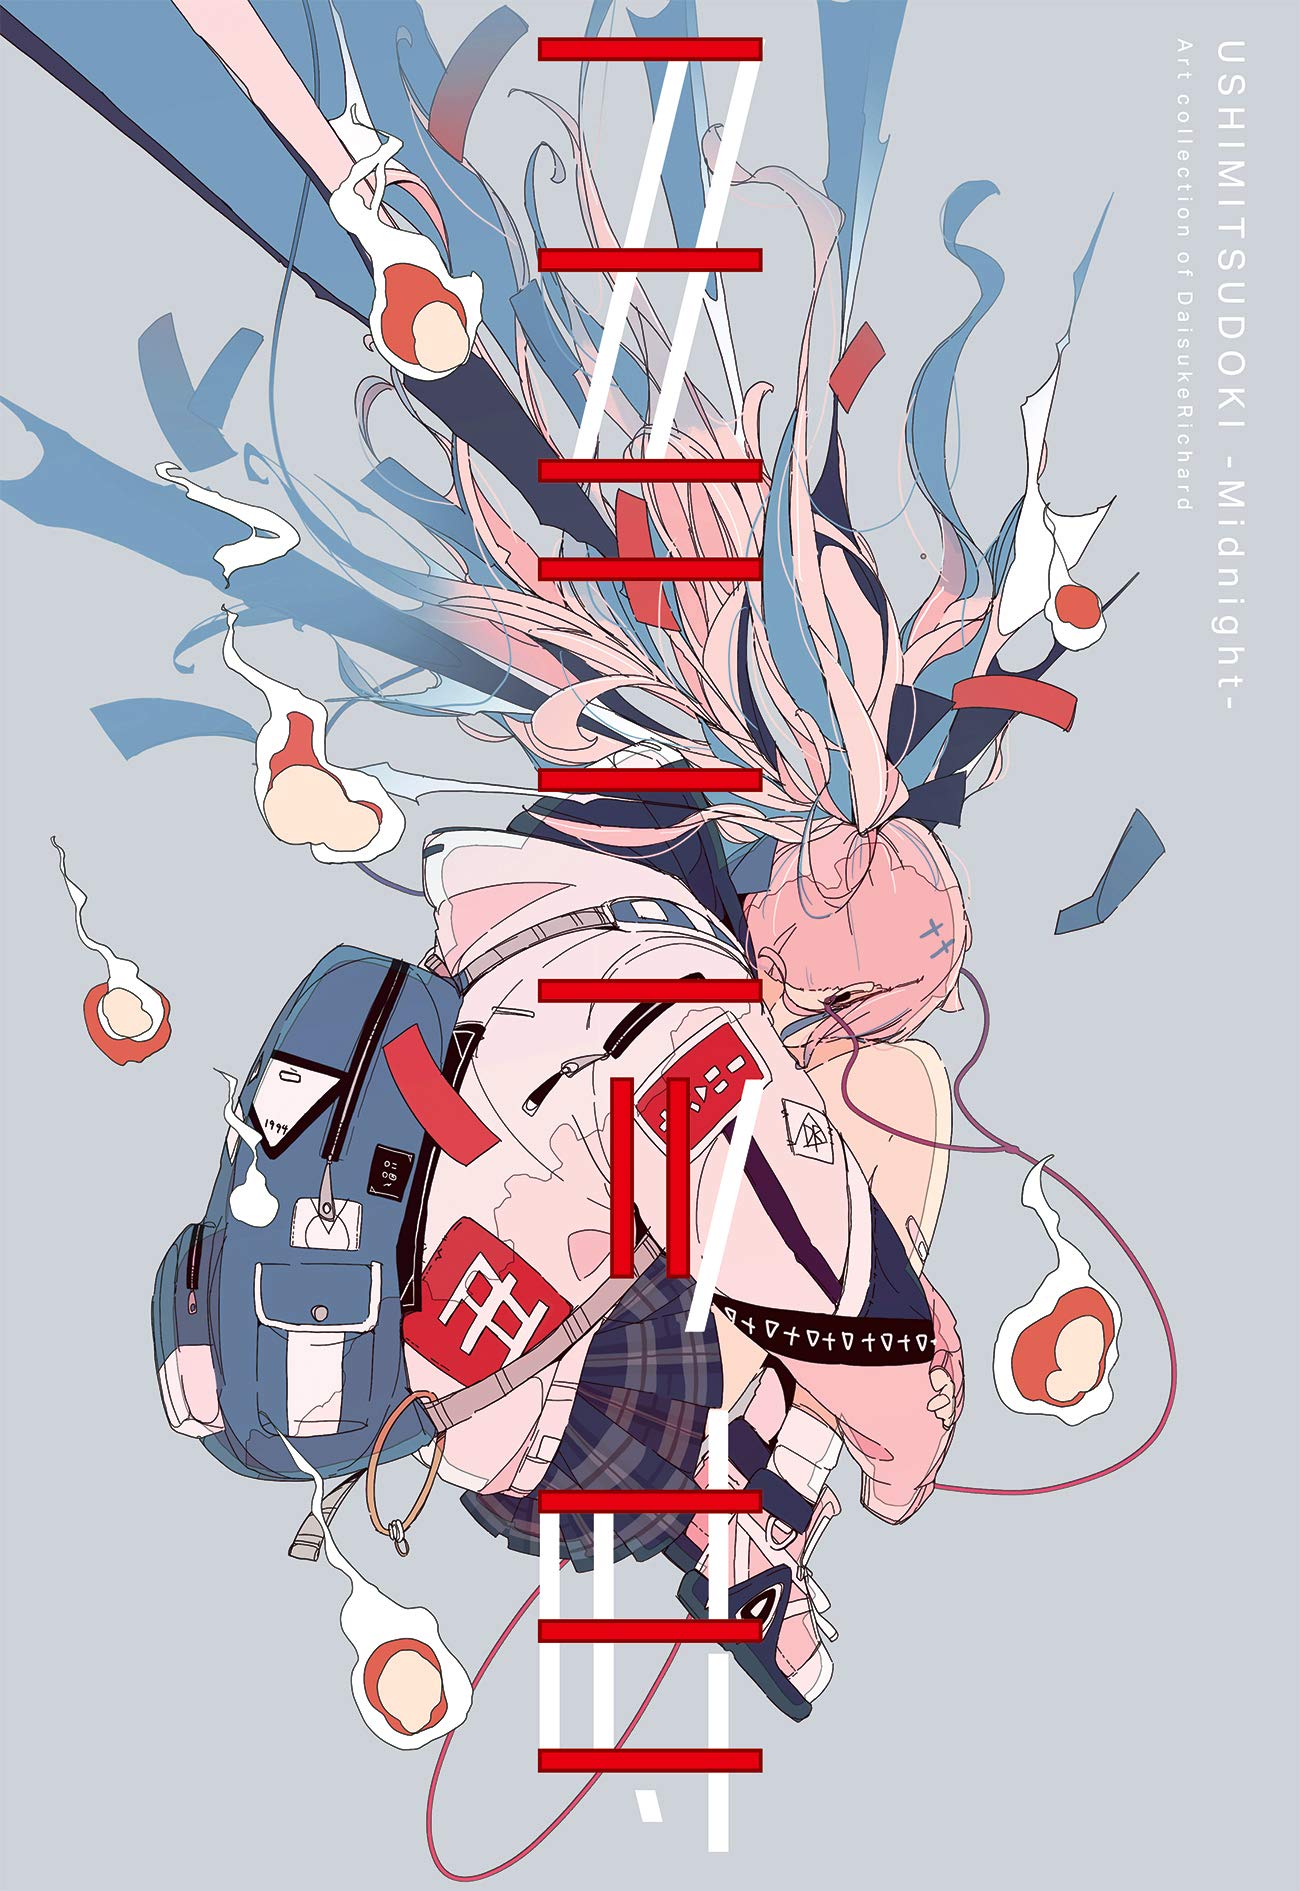 USHIMITSUDOKI-Midnight-: Art Collection of DaisukeRichard